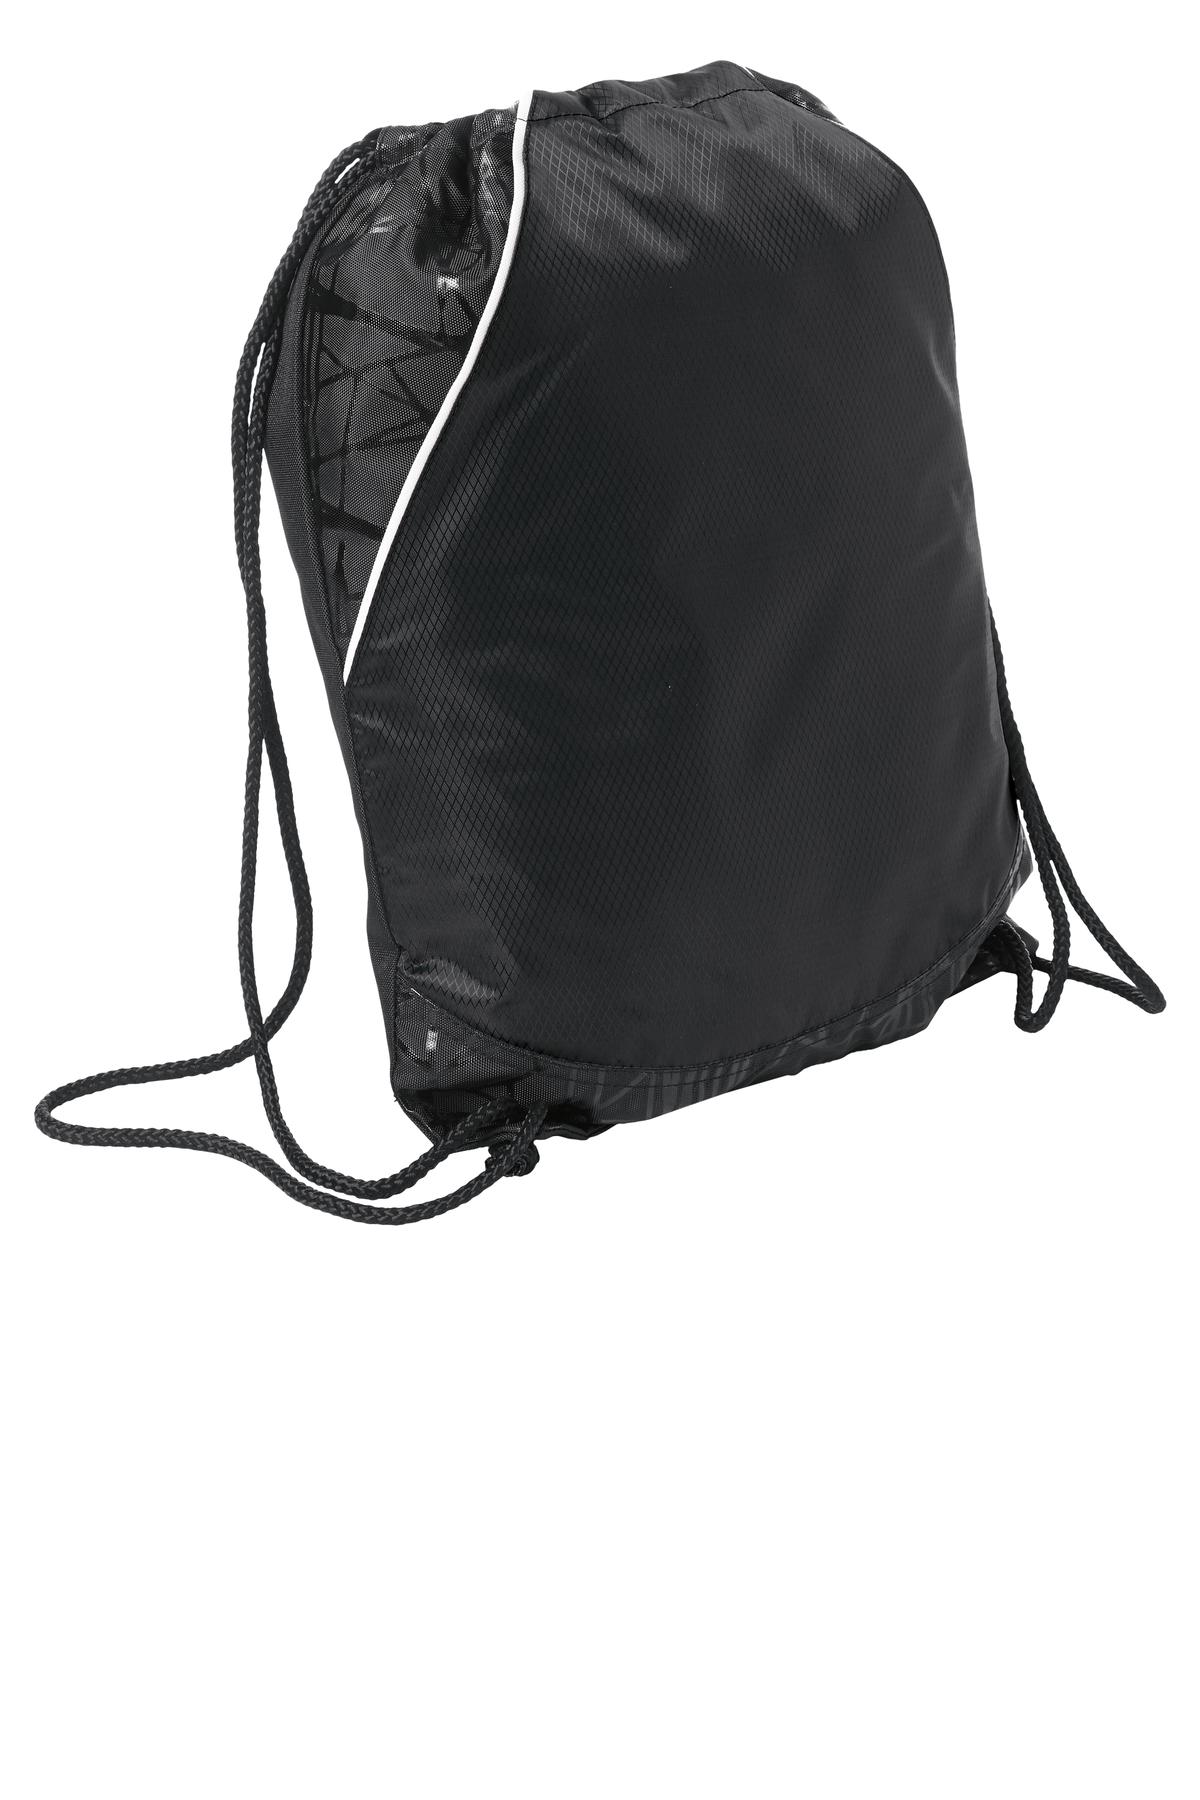 Sport-Tek Hospitality Bags ® Rival Cinch Pack.-Sport-Tek